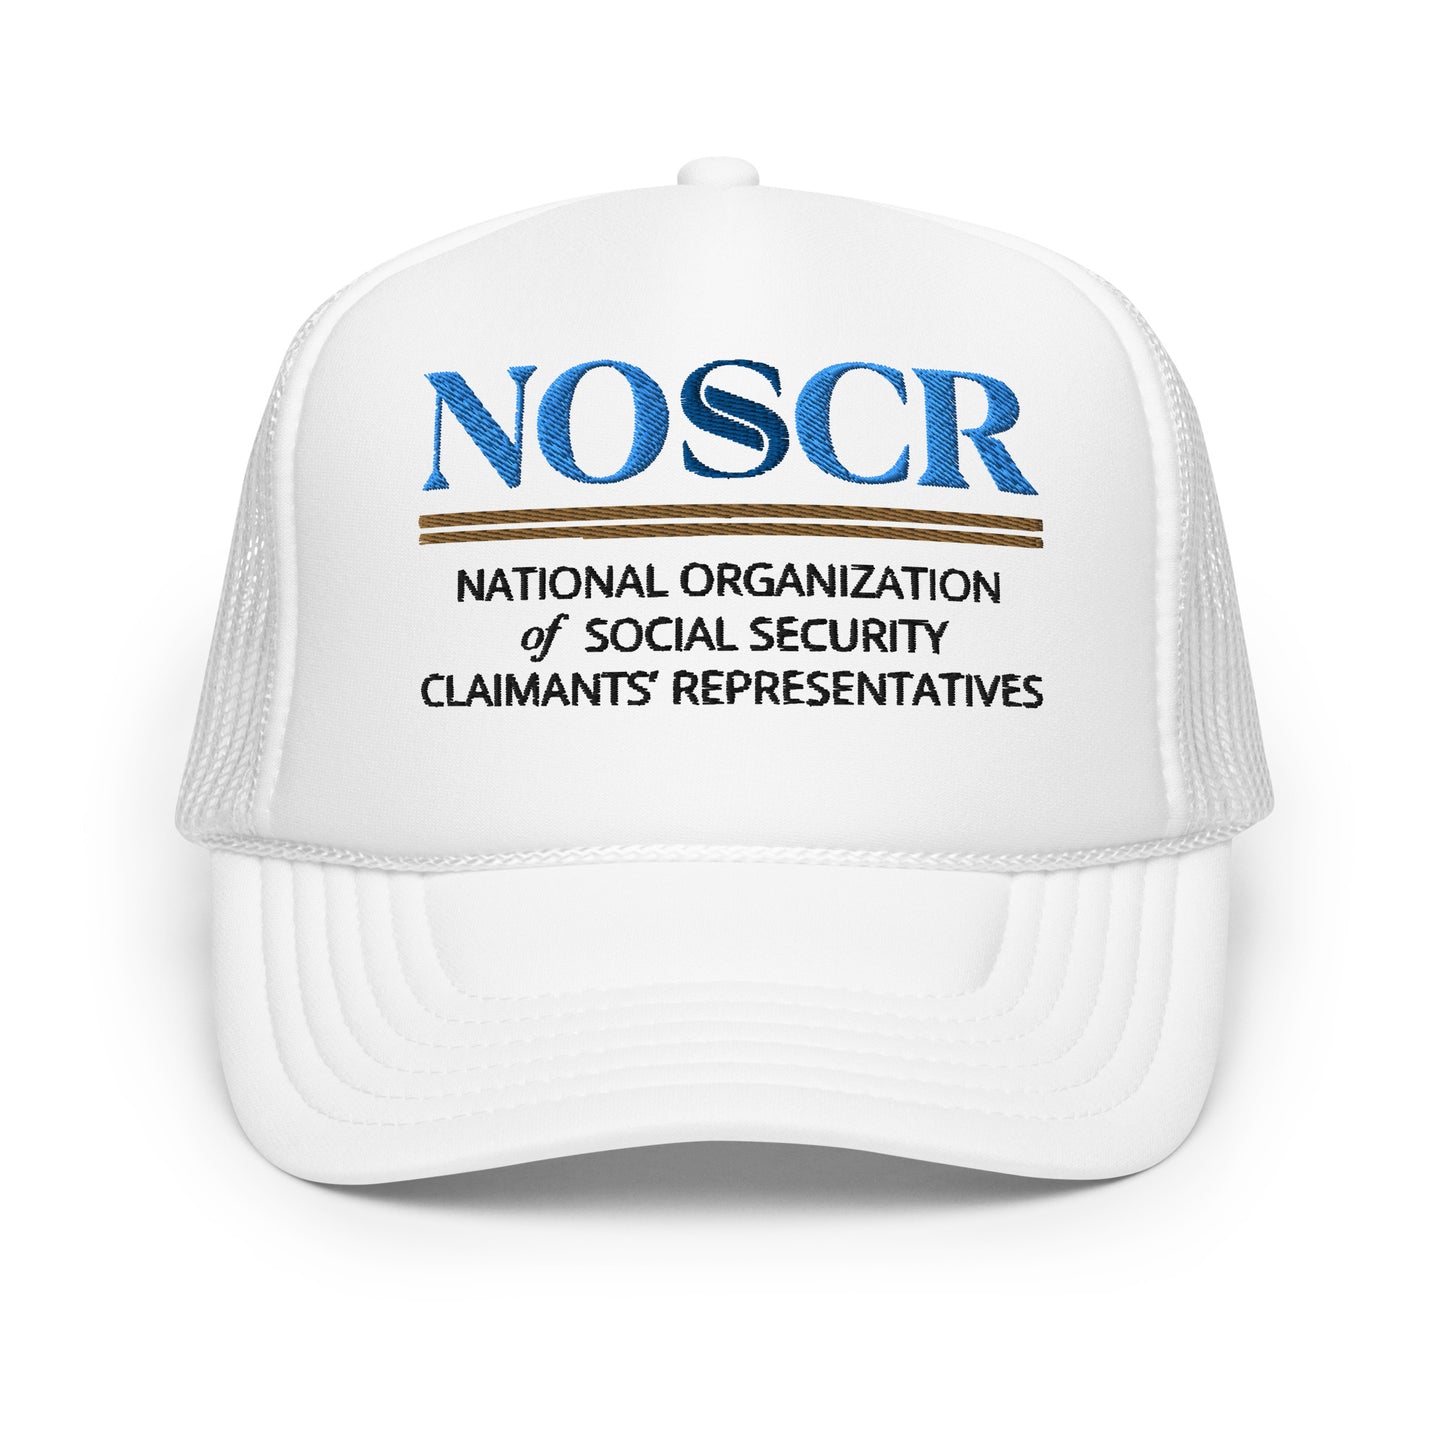 NOSSCR Foam trucker hat